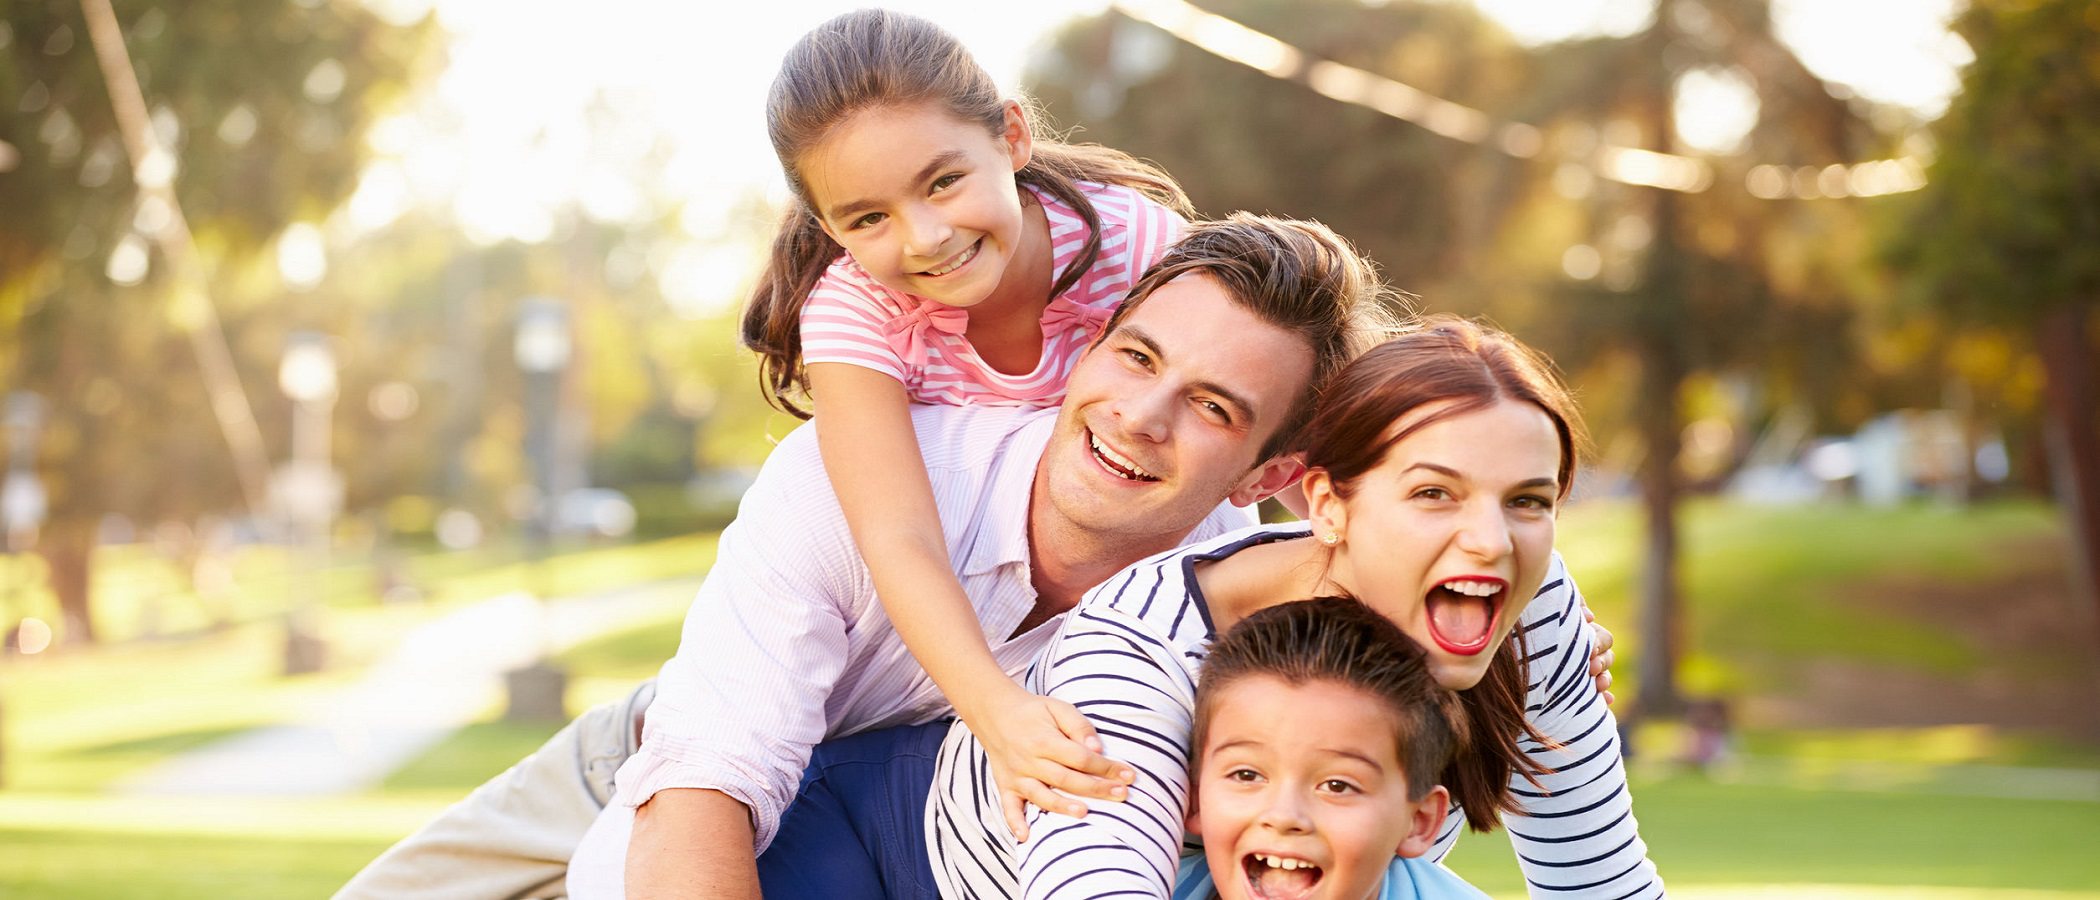 5 claves para ser felices en familia